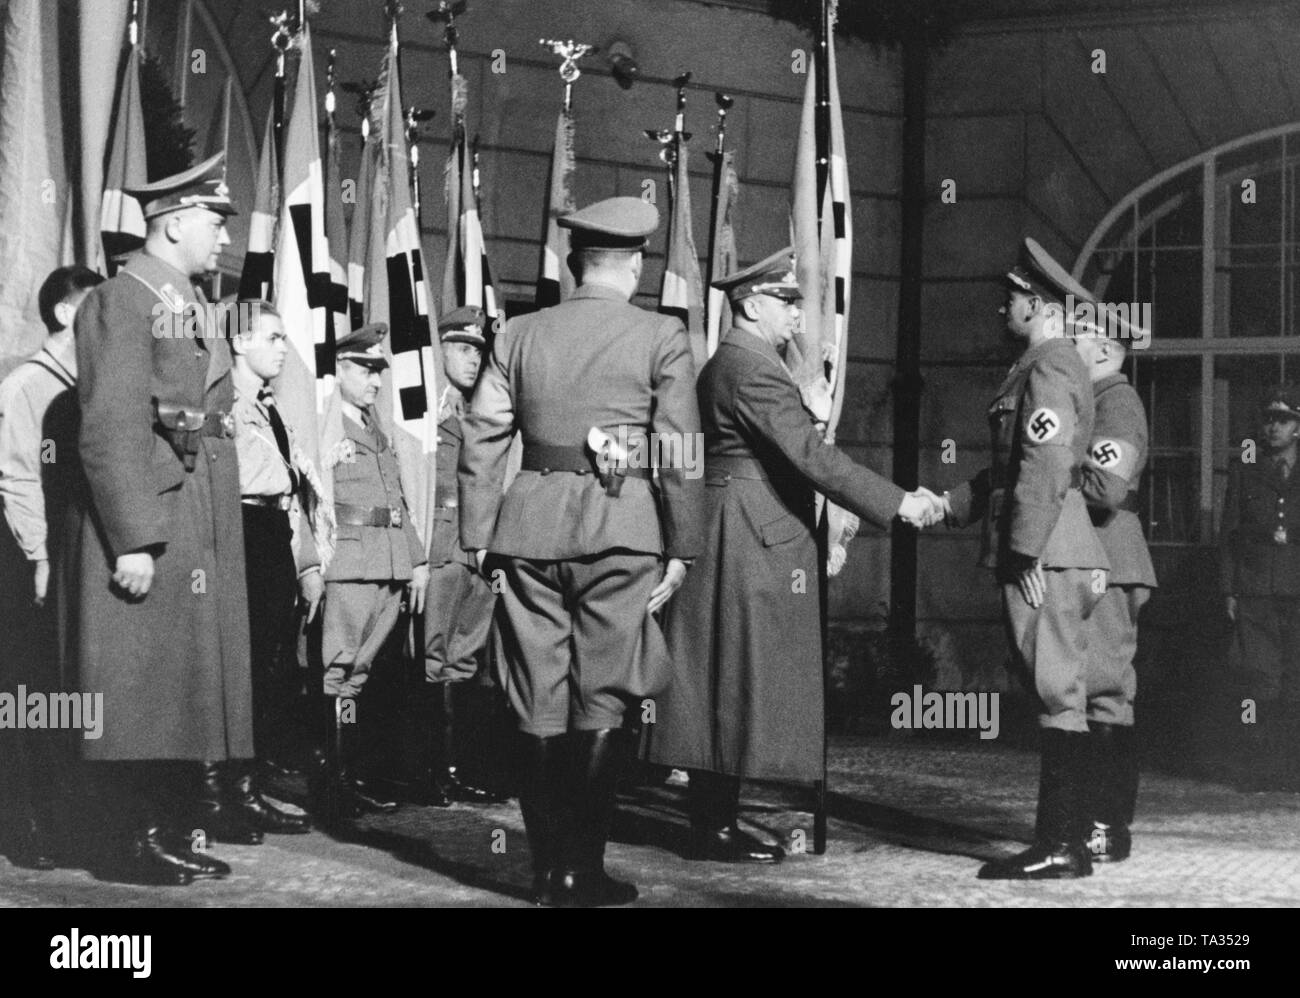 Anlässlich der Robert Ley's Besuch in Prag, der Gauleiter des Sudetenlandes Konrad Henlein Hände über Flaggen zu 32 lokalen Gruppen. Seit März 1939 sind die Gebiete von Böhmen und Mähren hatten unter deutscher Besatzung wurde. Stockfoto